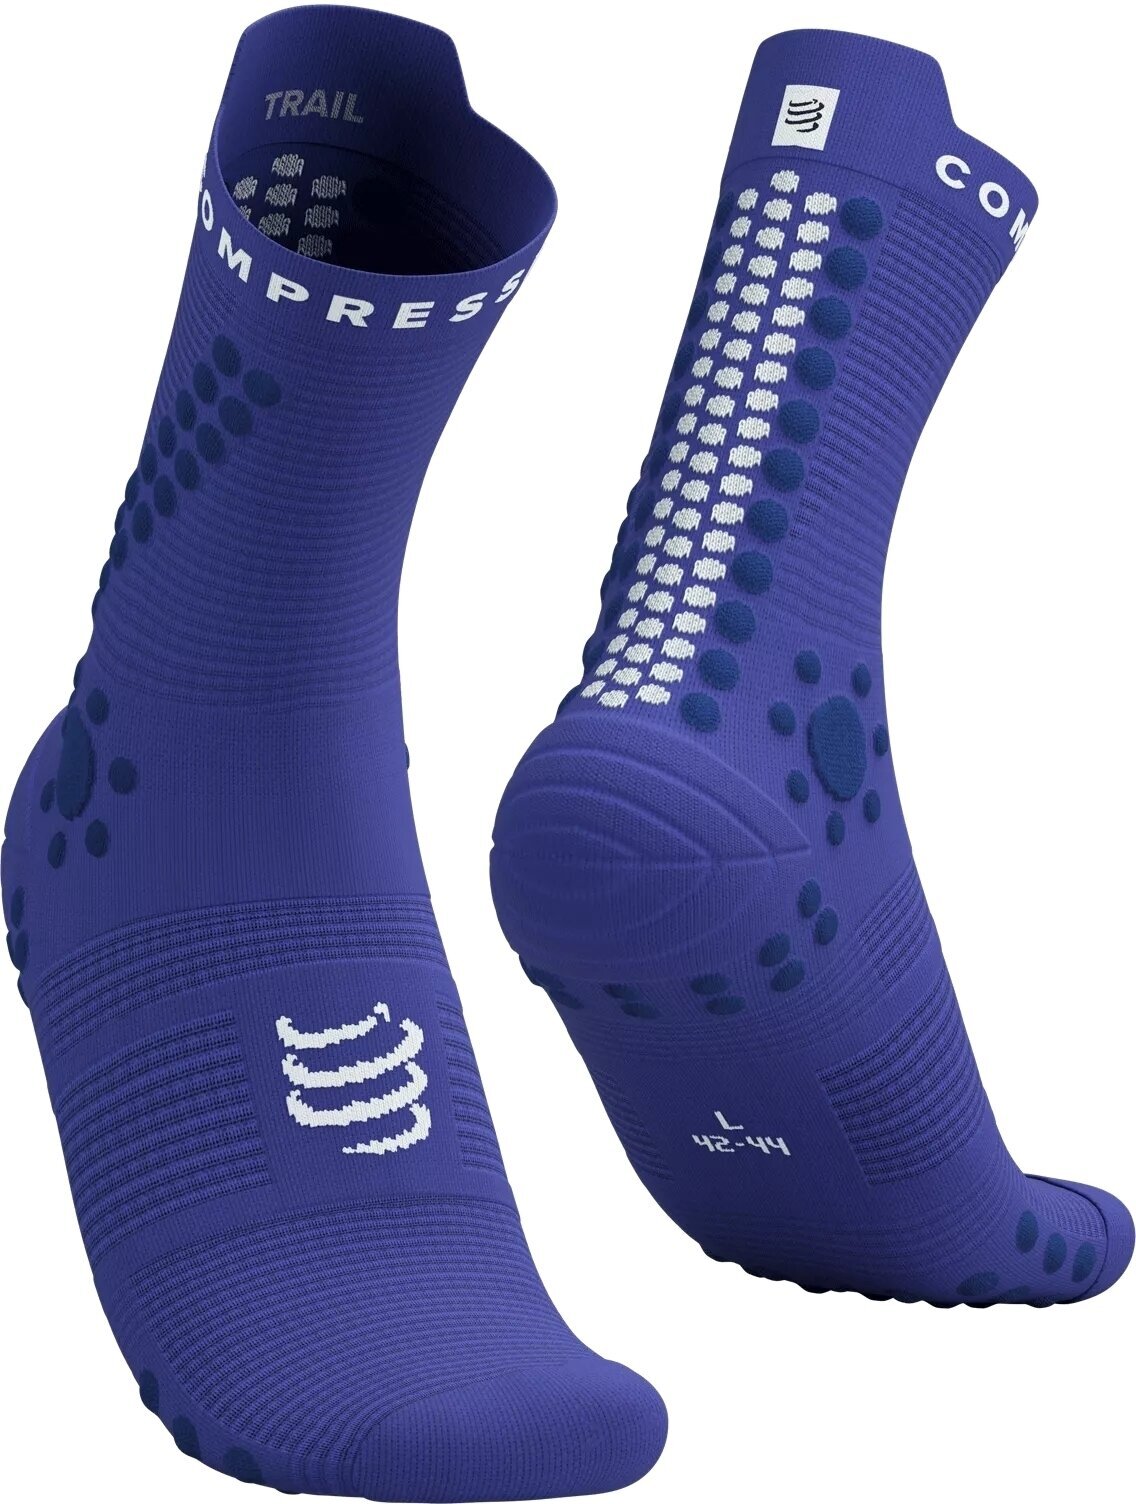 Běžecké ponožky
 Compressport Pro Racing Socks V4.0 Trail Dazzling Blue/Dress Blues/White T4 Běžecké ponožky